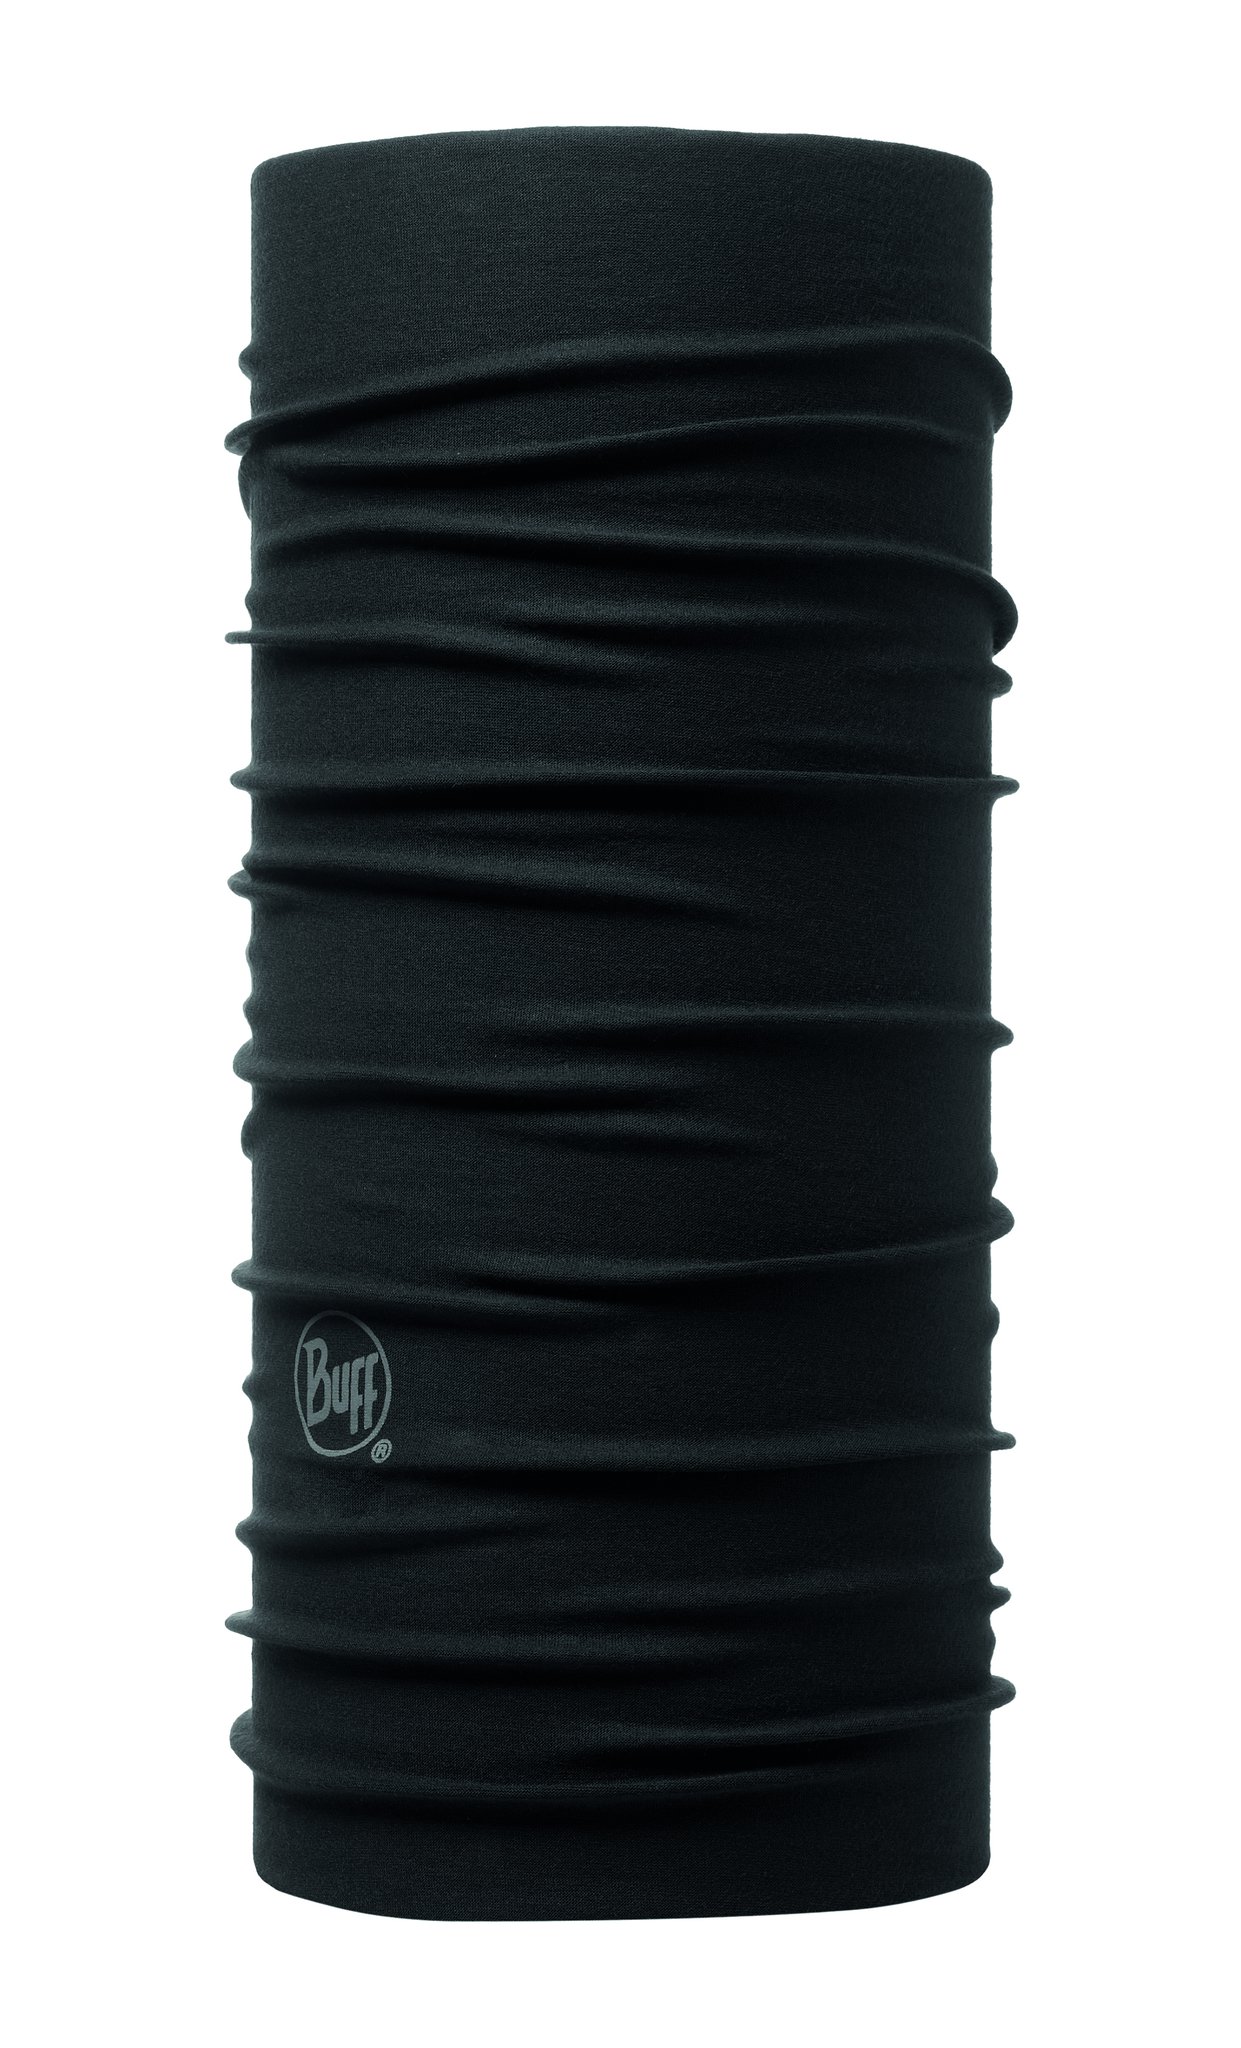 Бандана Buff Original Solid Black 117818 (53-62)